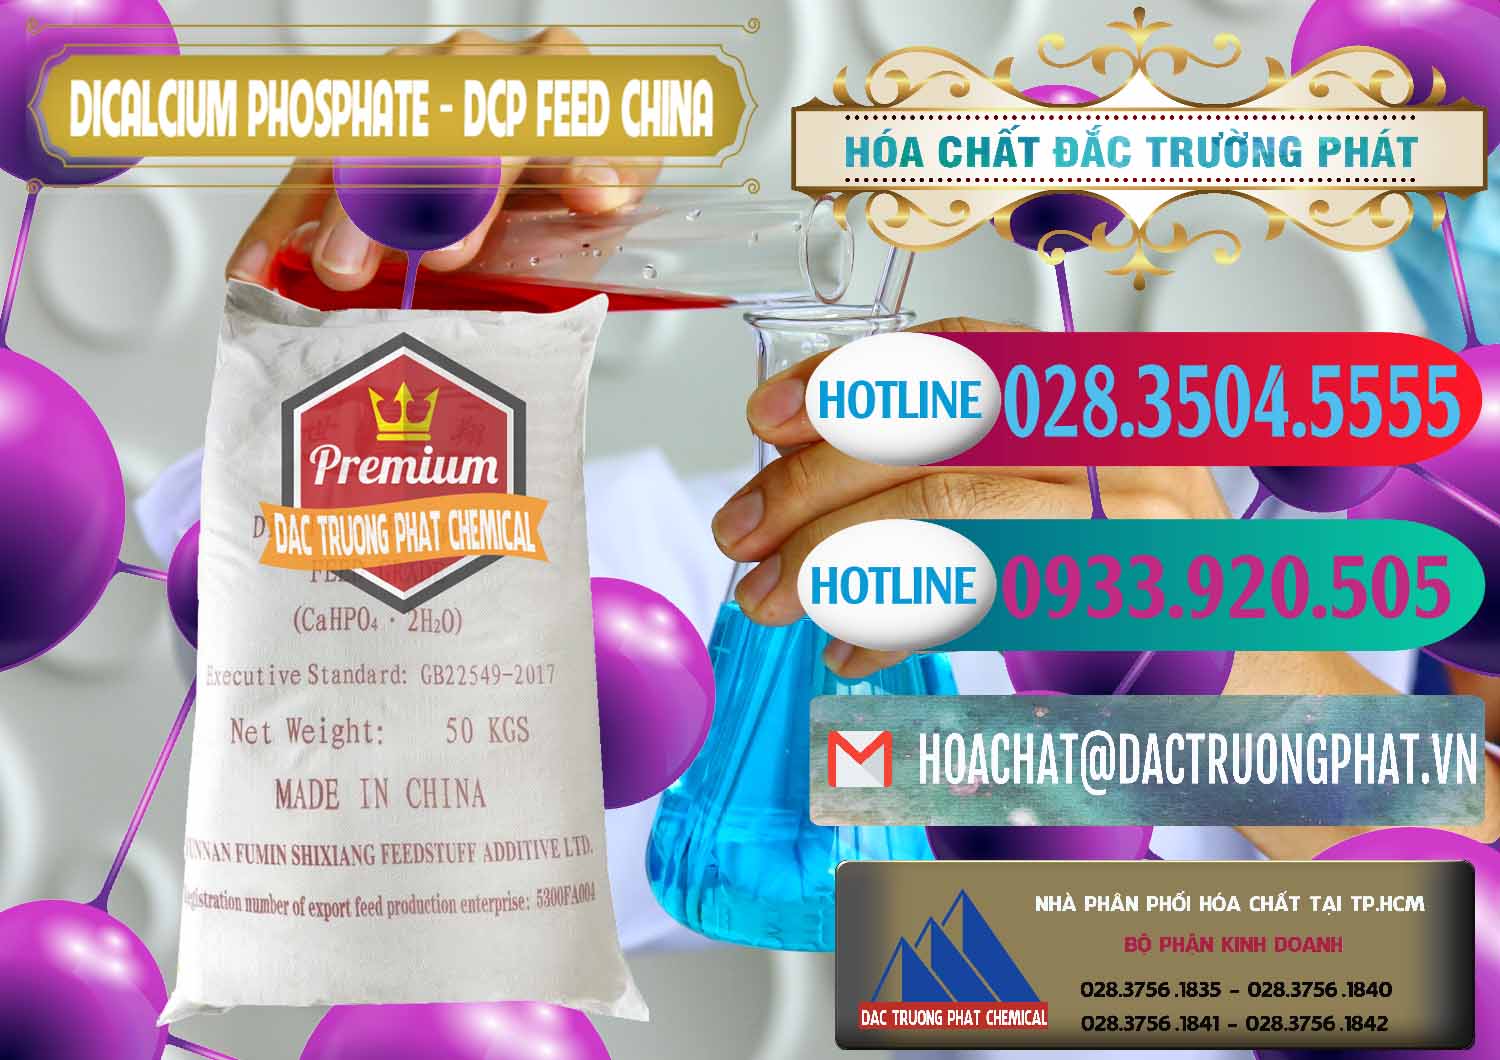 Công ty cung cấp _ bán Dicalcium Phosphate - DCP Feed Grade Trung Quốc China - 0296 - Chuyên cung cấp ( phân phối ) hóa chất tại TP.HCM - truongphat.vn